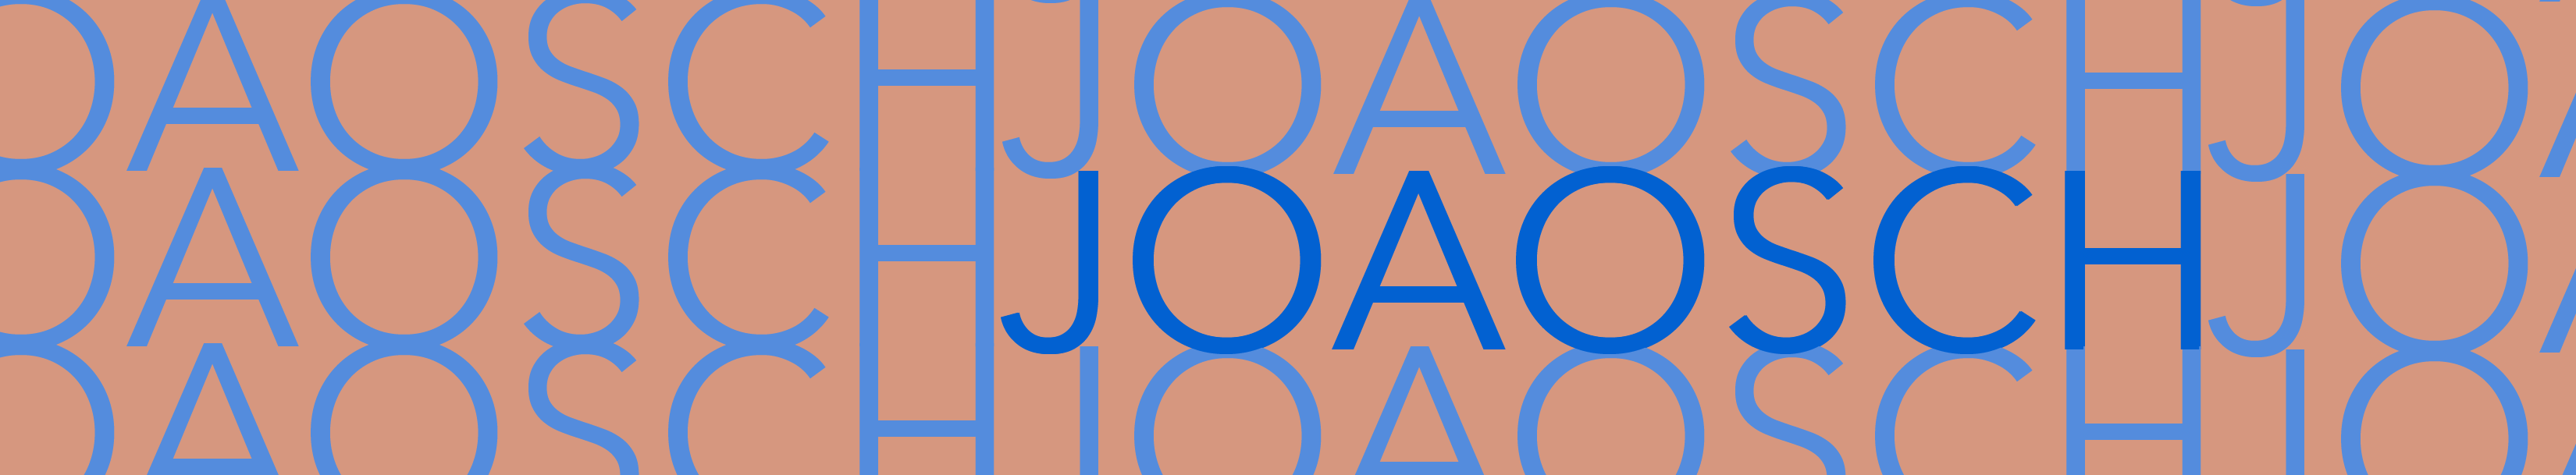 João Pedro Schweitzer's profile banner